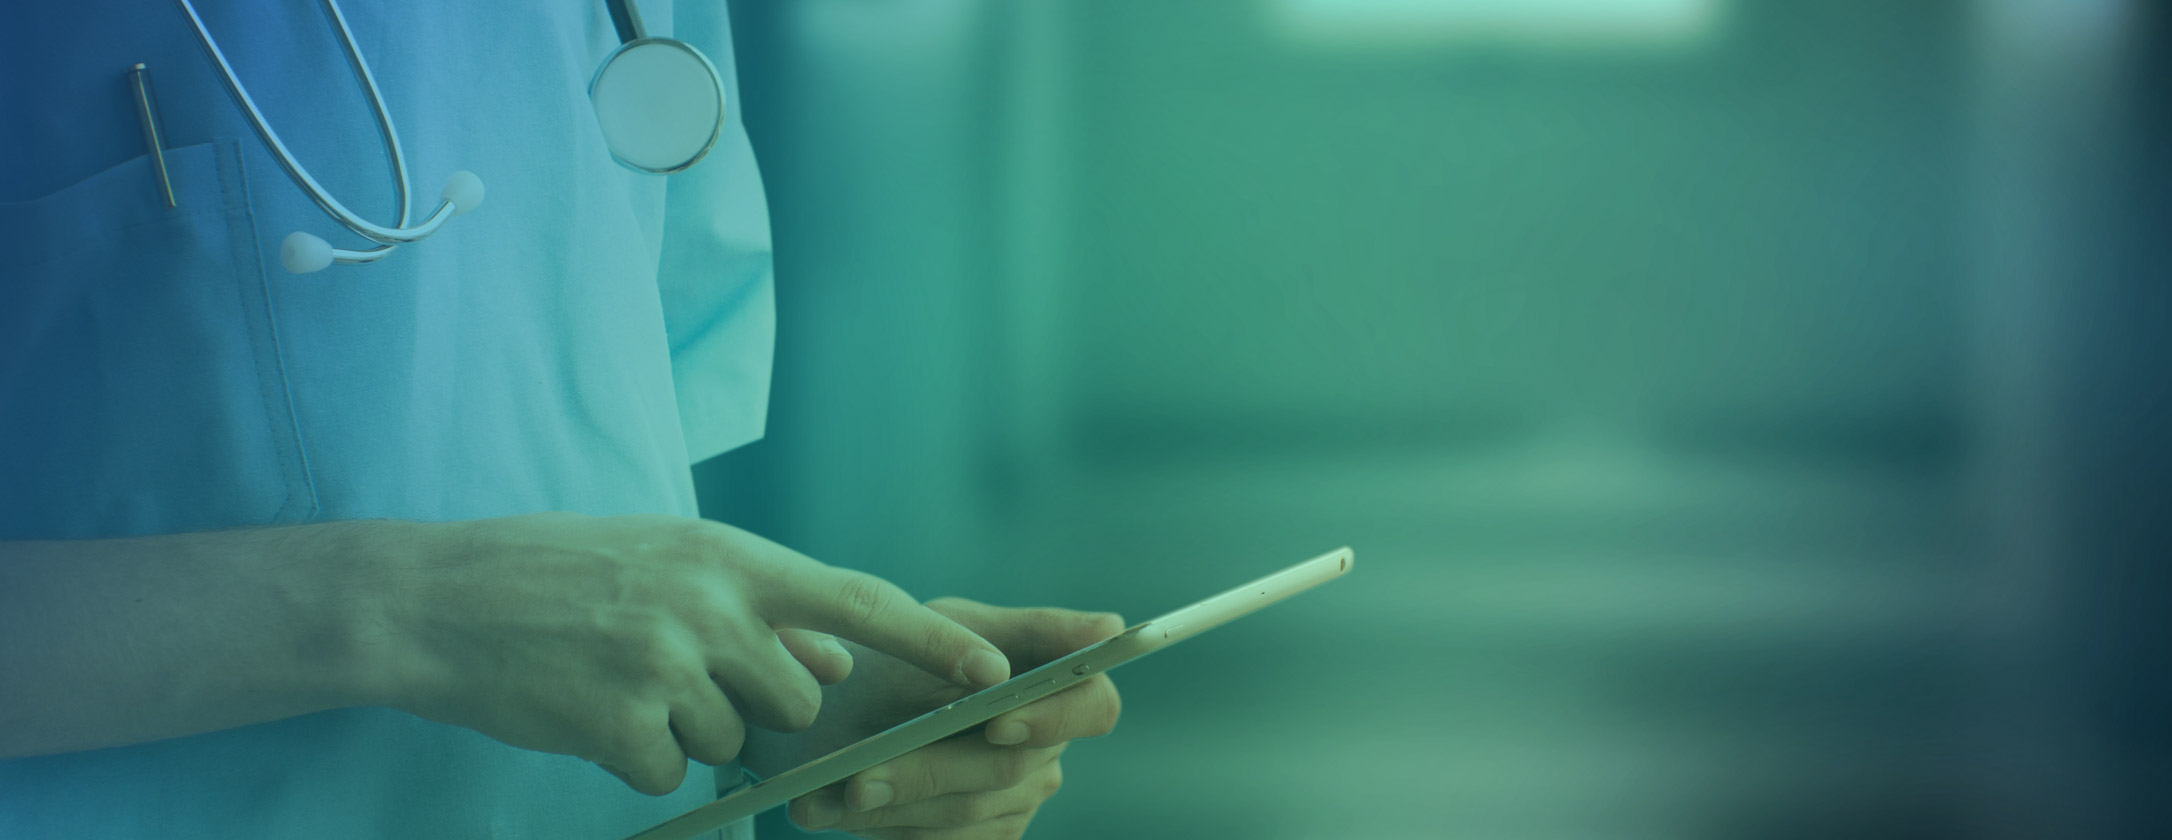 Das Bild zeigt eine Ärztin, die mit dem Finger auf ein Touchpad klickt.